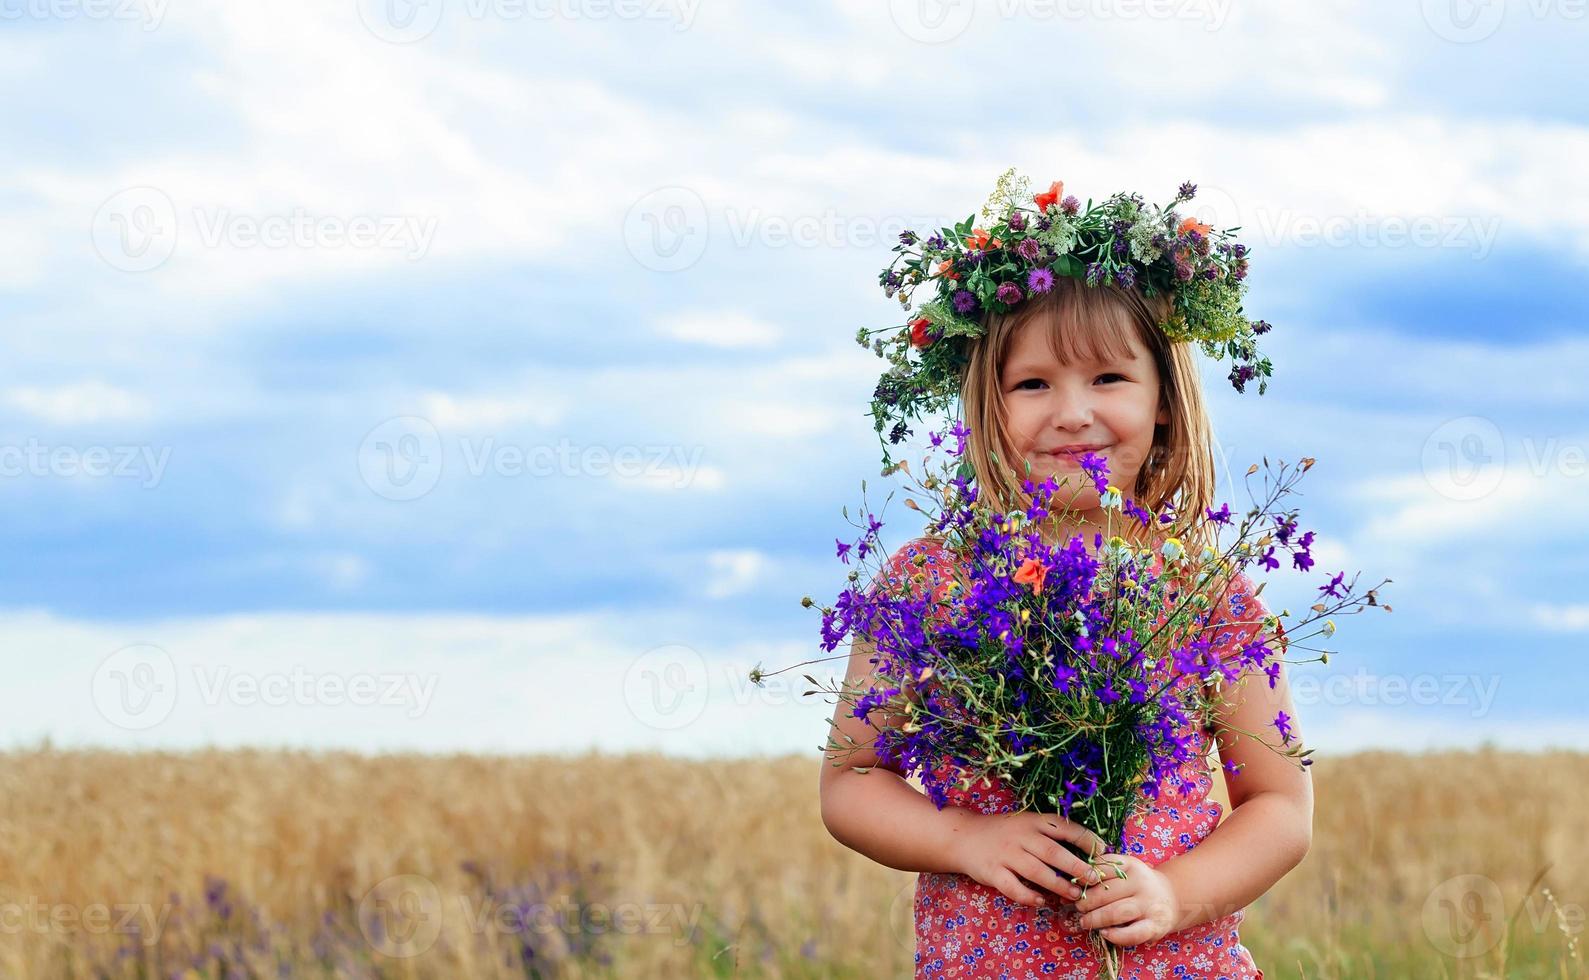 Cute little girl in summer wheat field photo